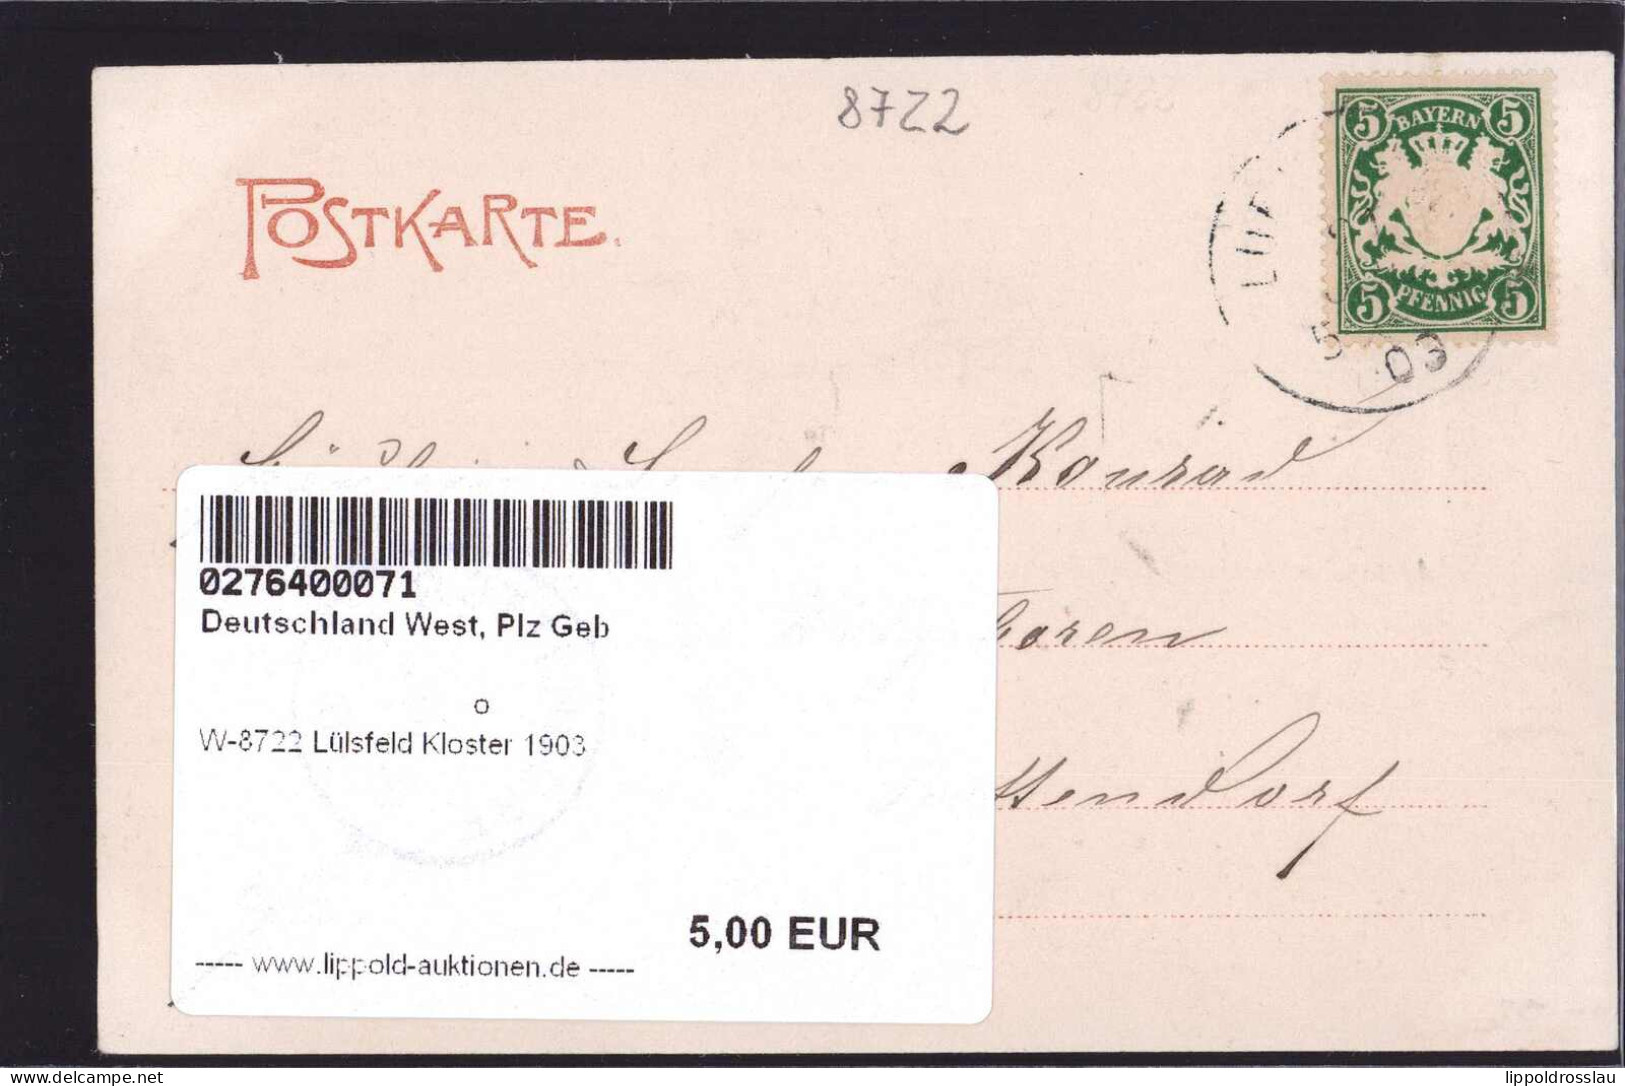 Gest. W-8722 Lülsfeld Kloster 1903 - Schweinfurt